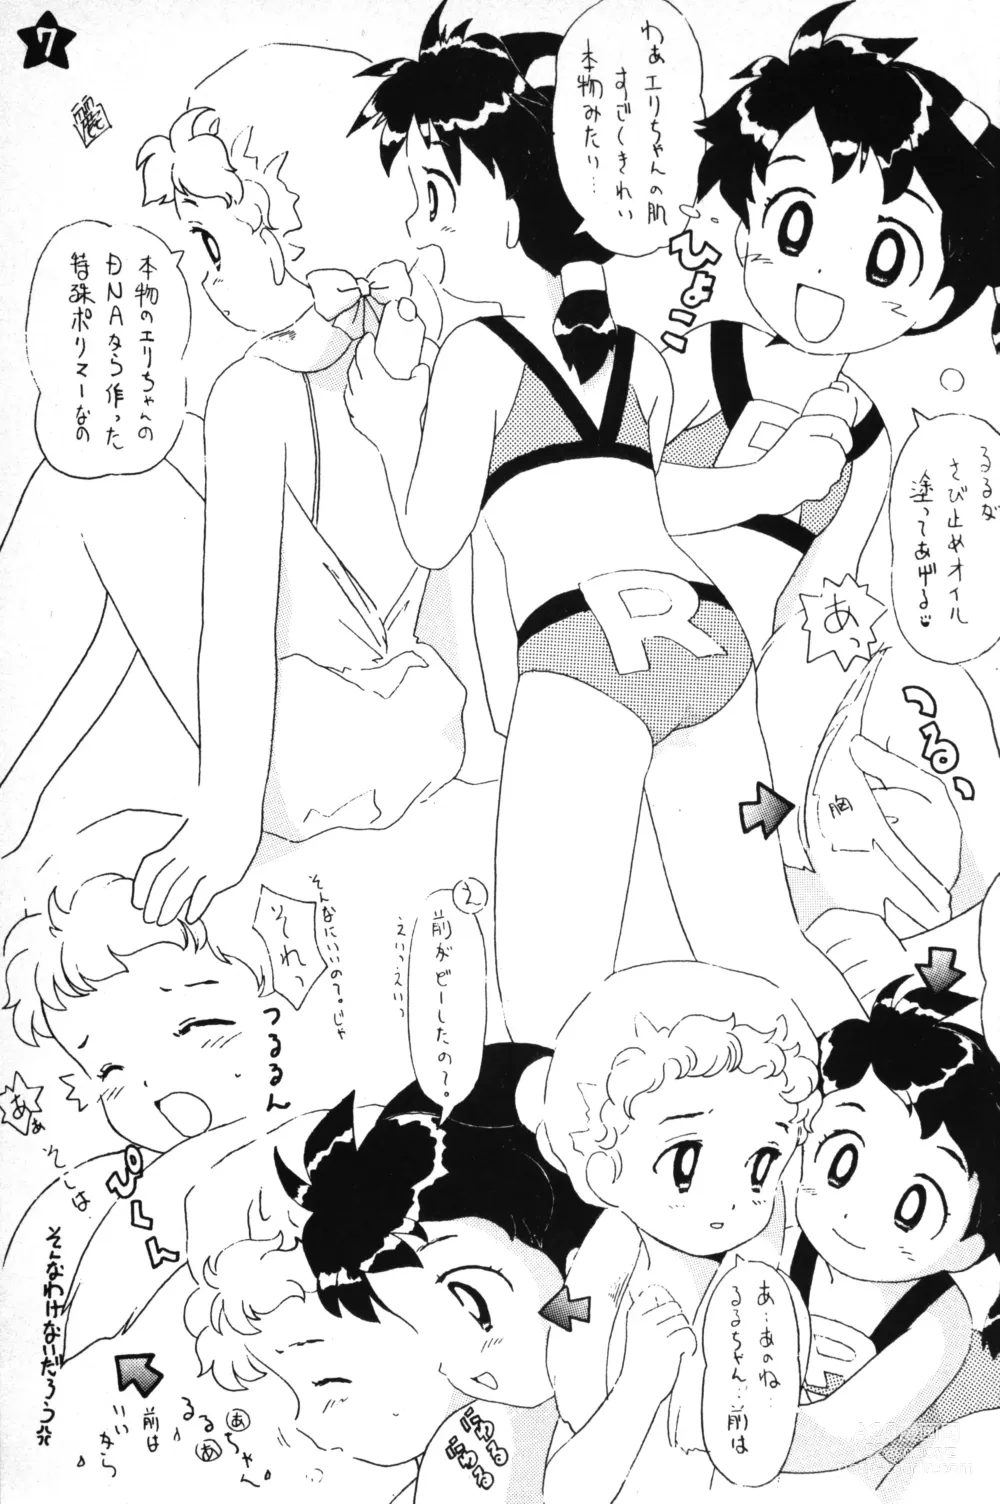 Page 6 of doujinshi Hoshi no Shima no Rururururu